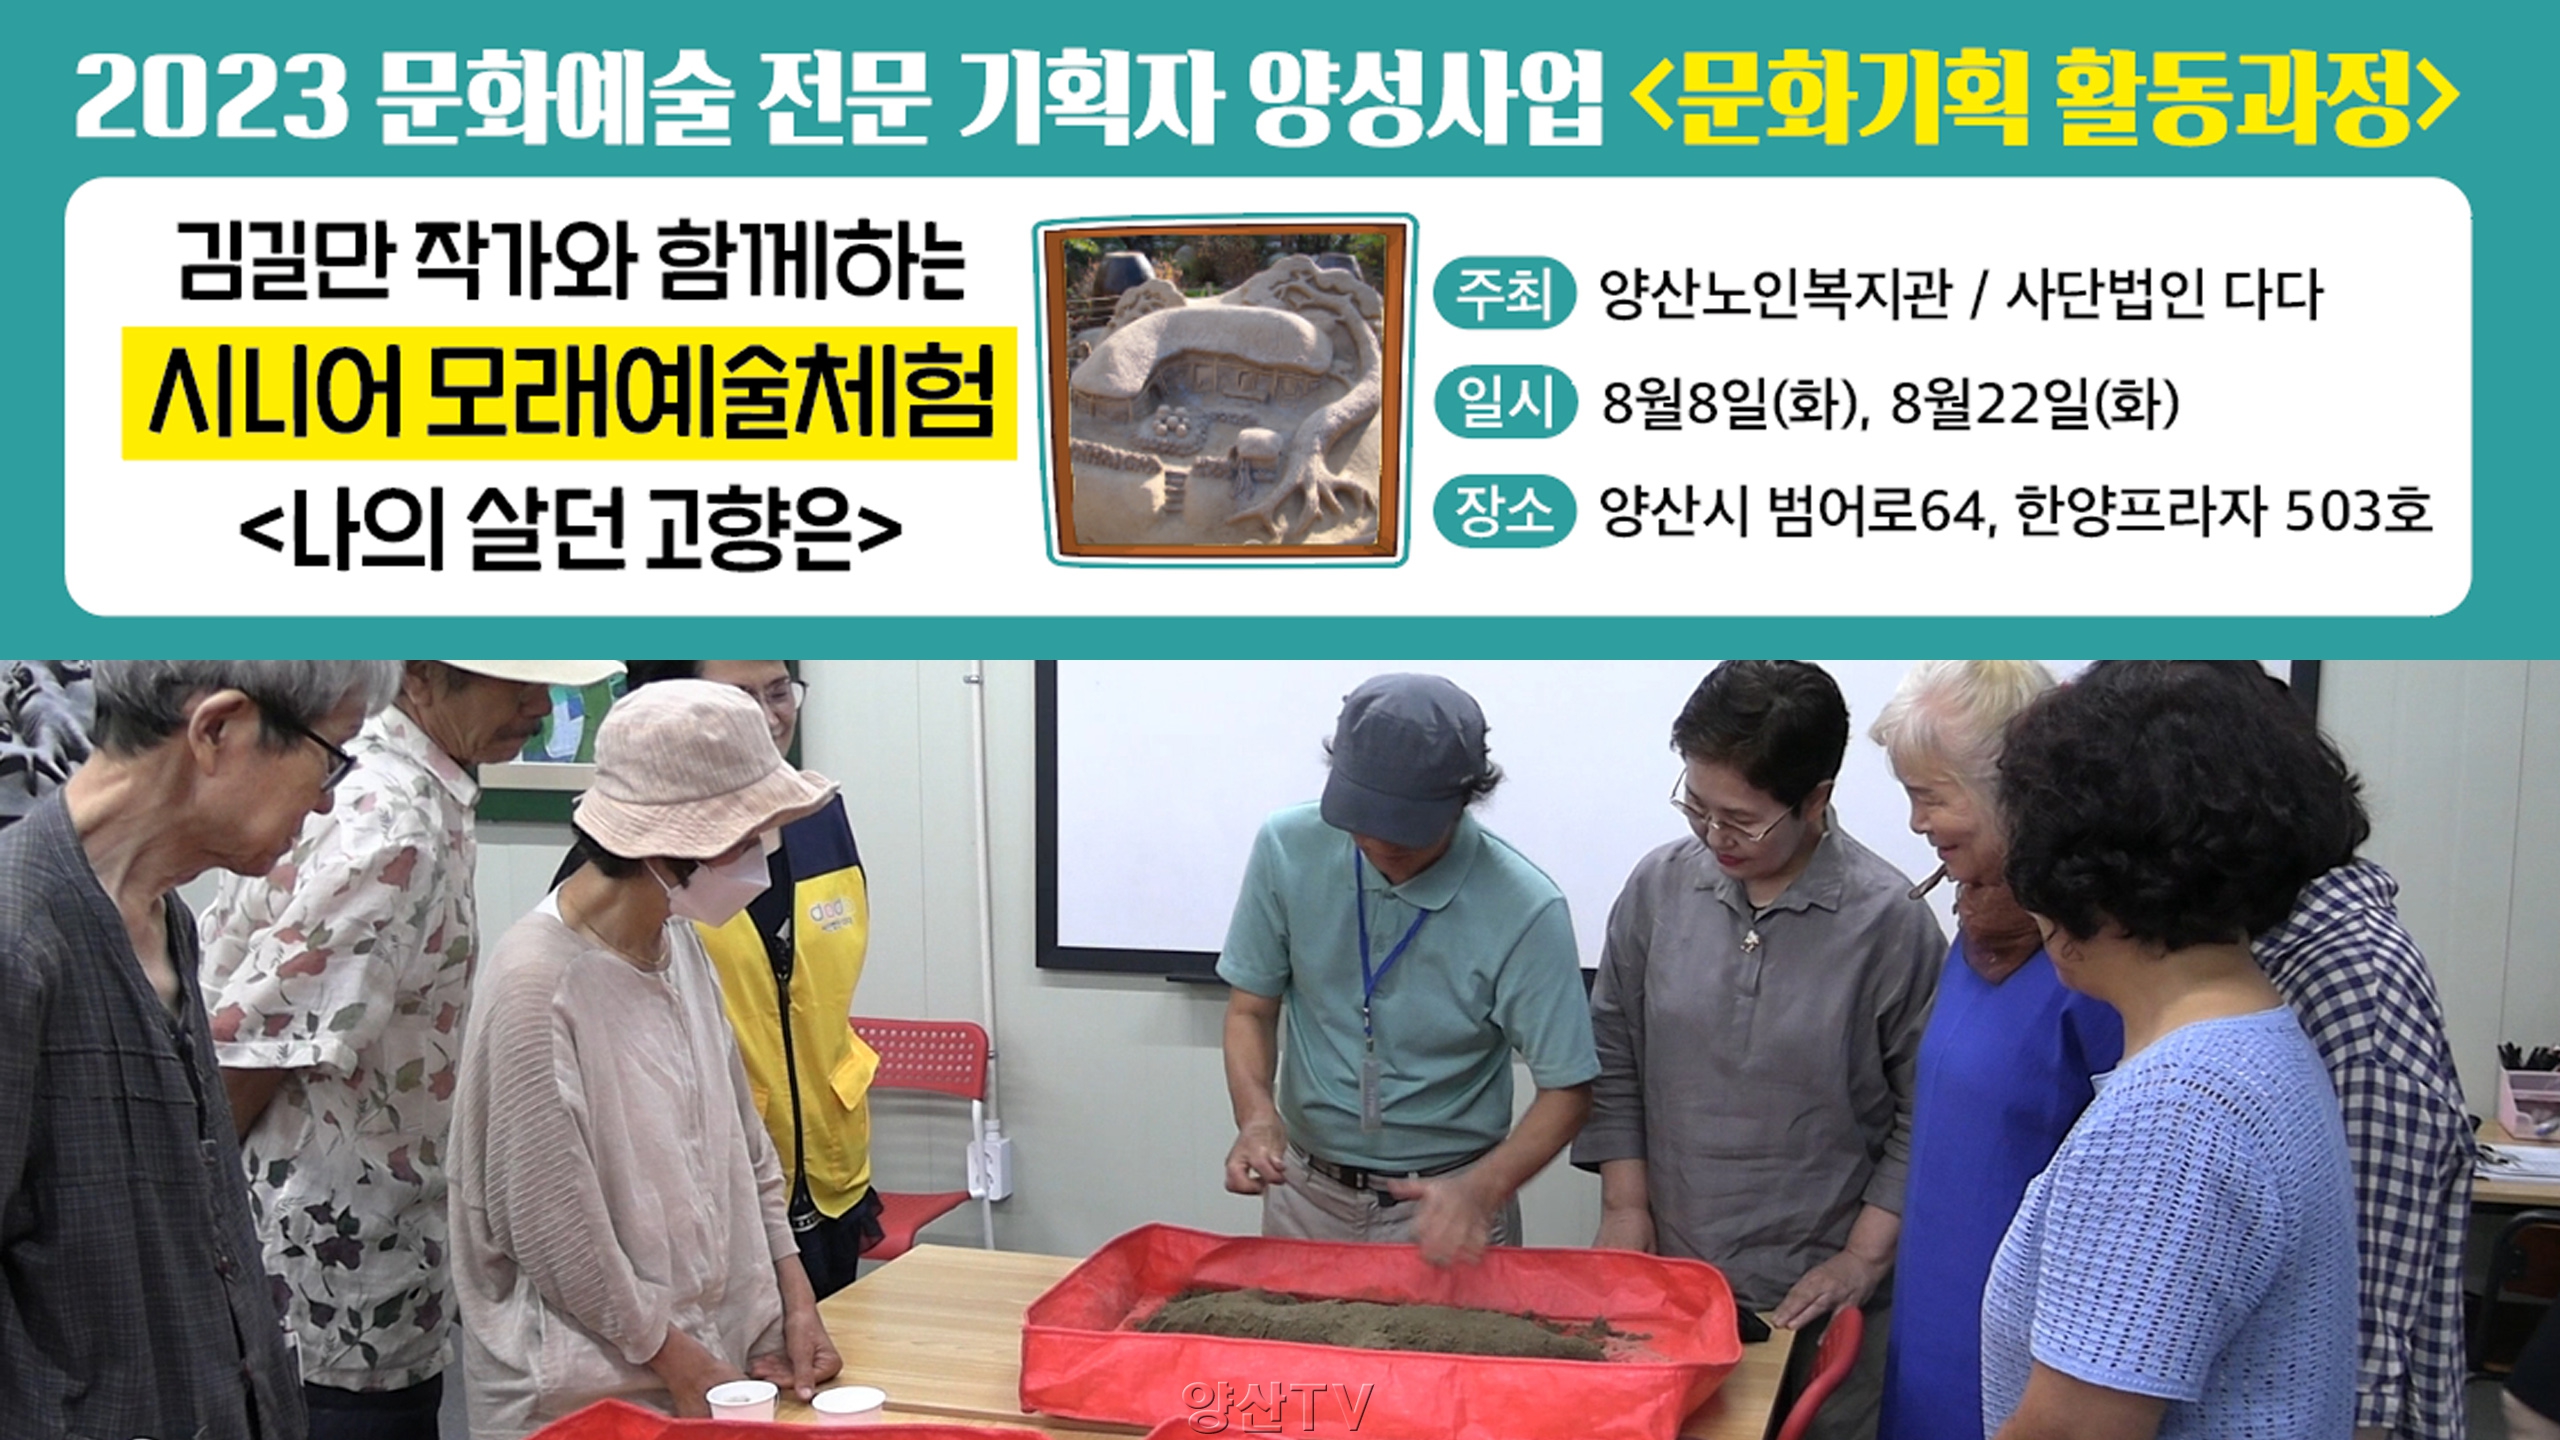 김길만 작가와 함께하는 '시니어 모래예술 체험'